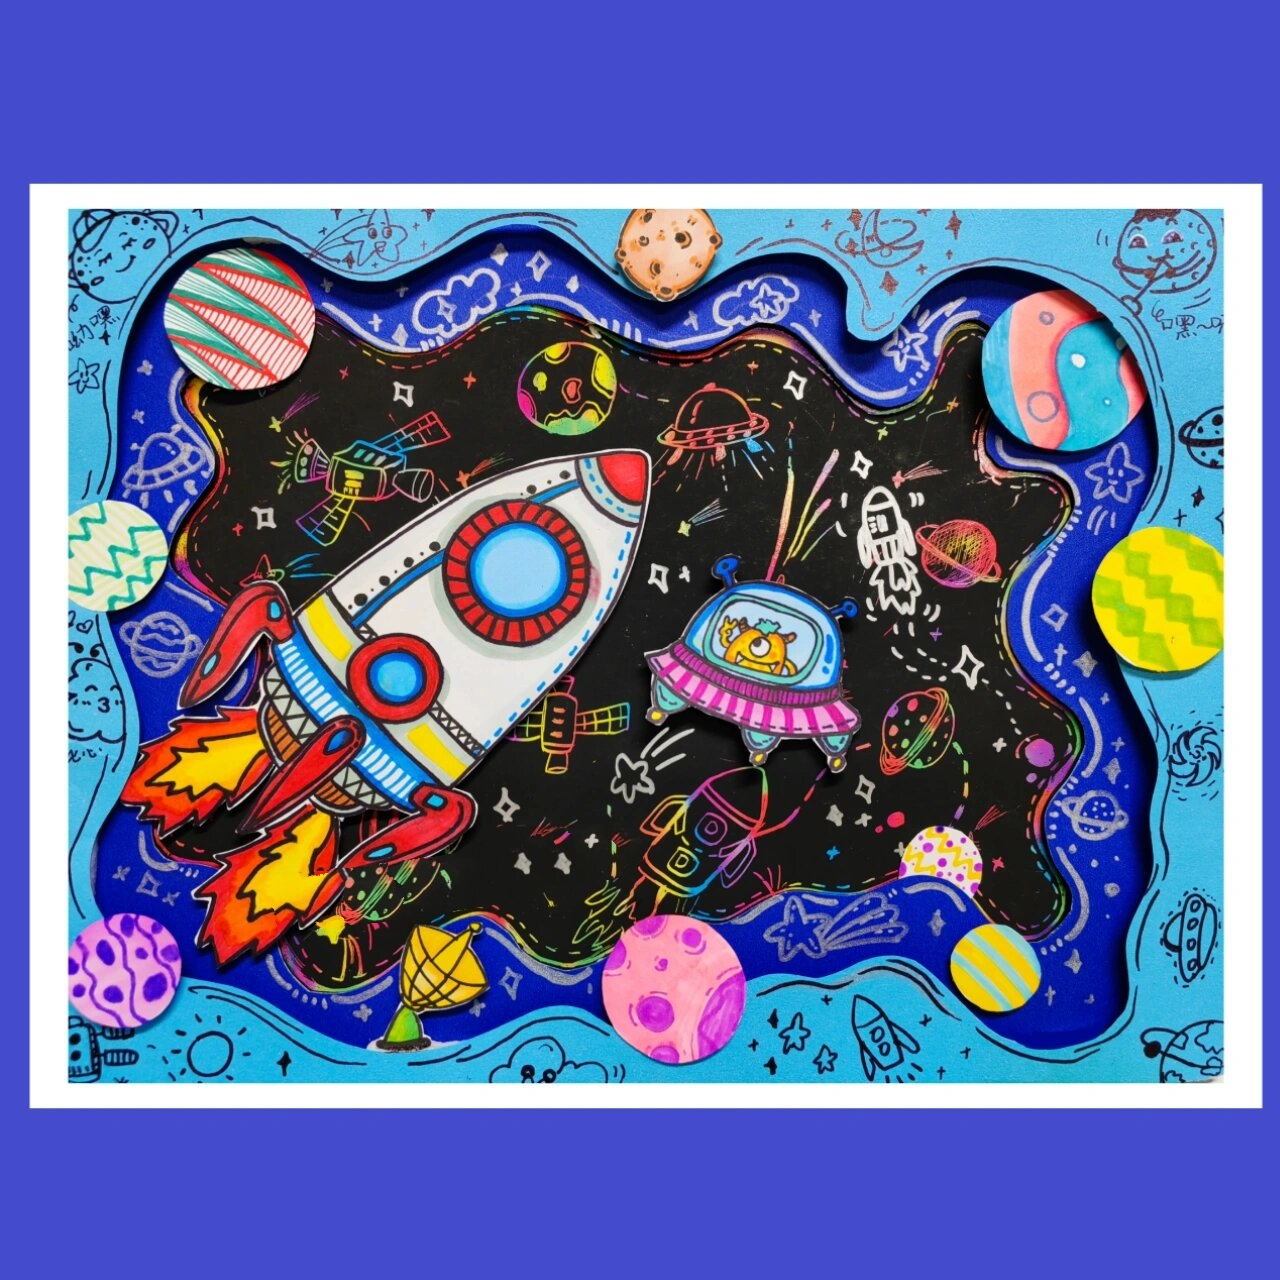 创意儿童画/探索宇宙04 压箱底的刮画纸翻出来97做个太空主题画